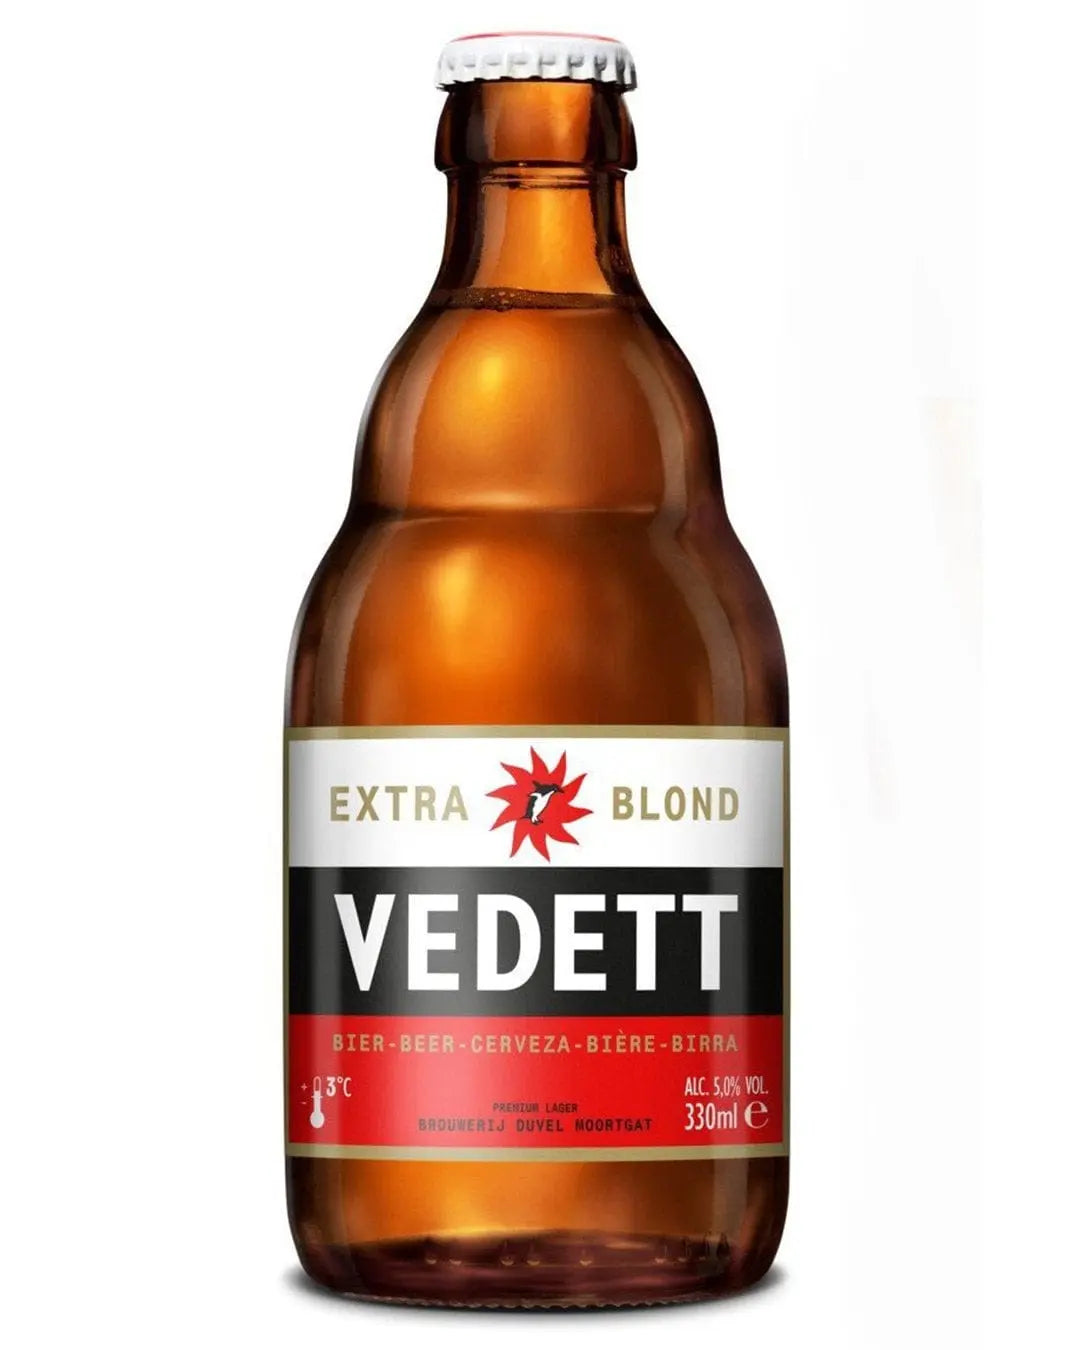 Vedett Blond Bottle, 330 ml Beer